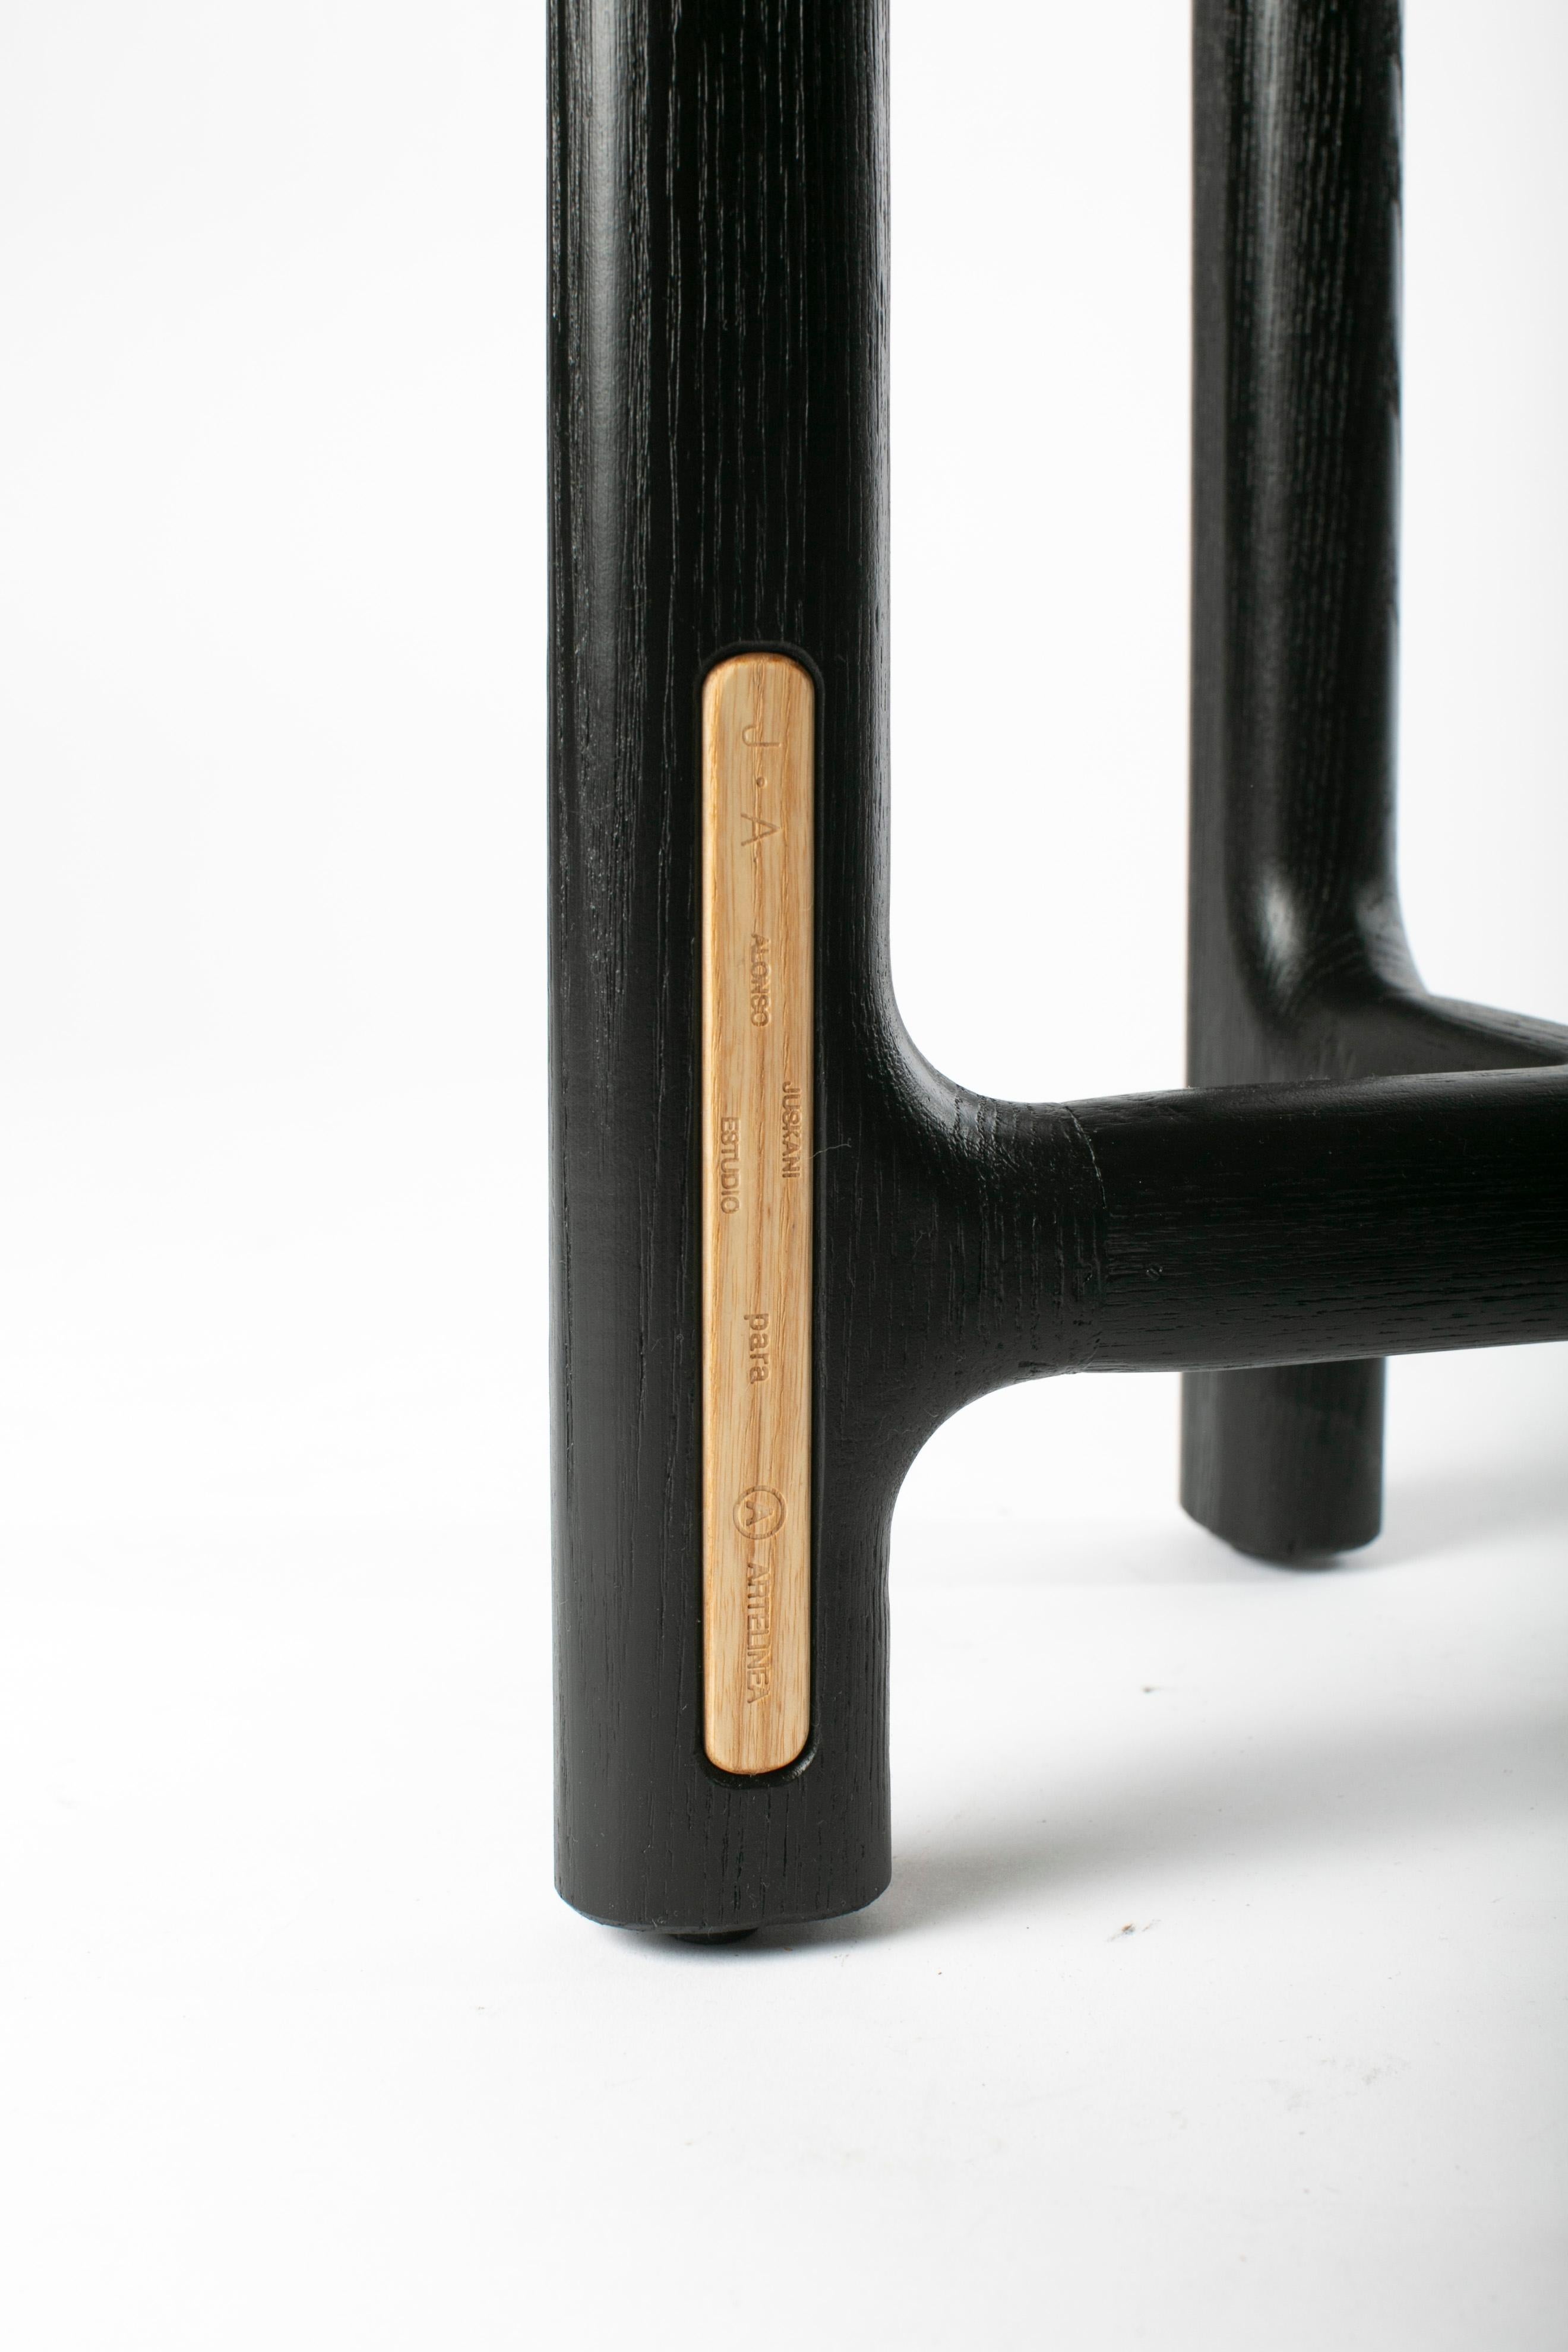 Desierto Coat Stand 170, Black Ash, Contemporary Mexican Design For Sale 1